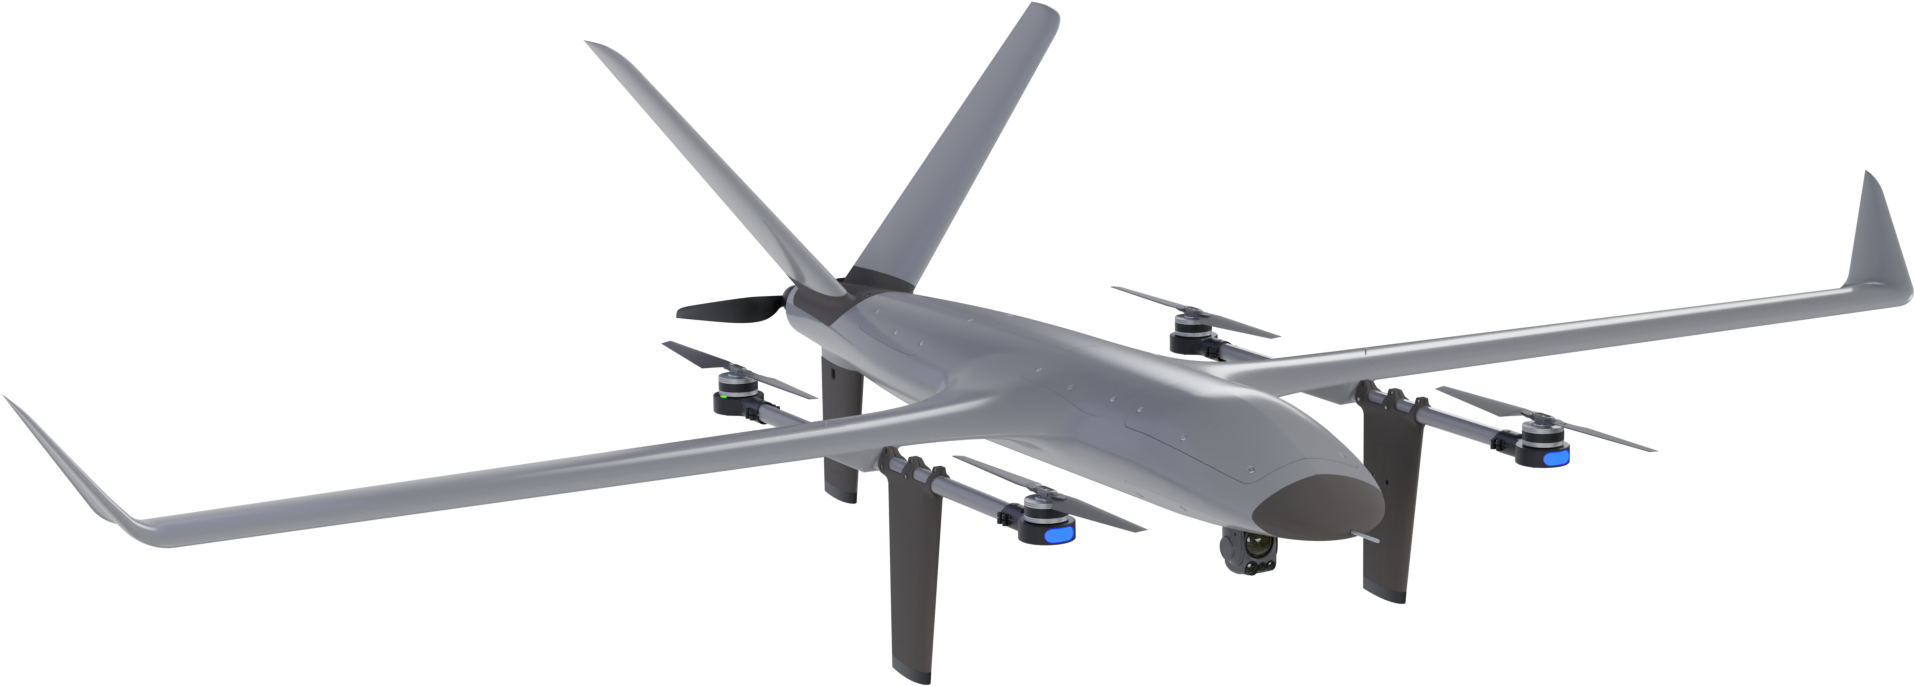 VTOne VTOL de longo alcance do fabricante português de drones